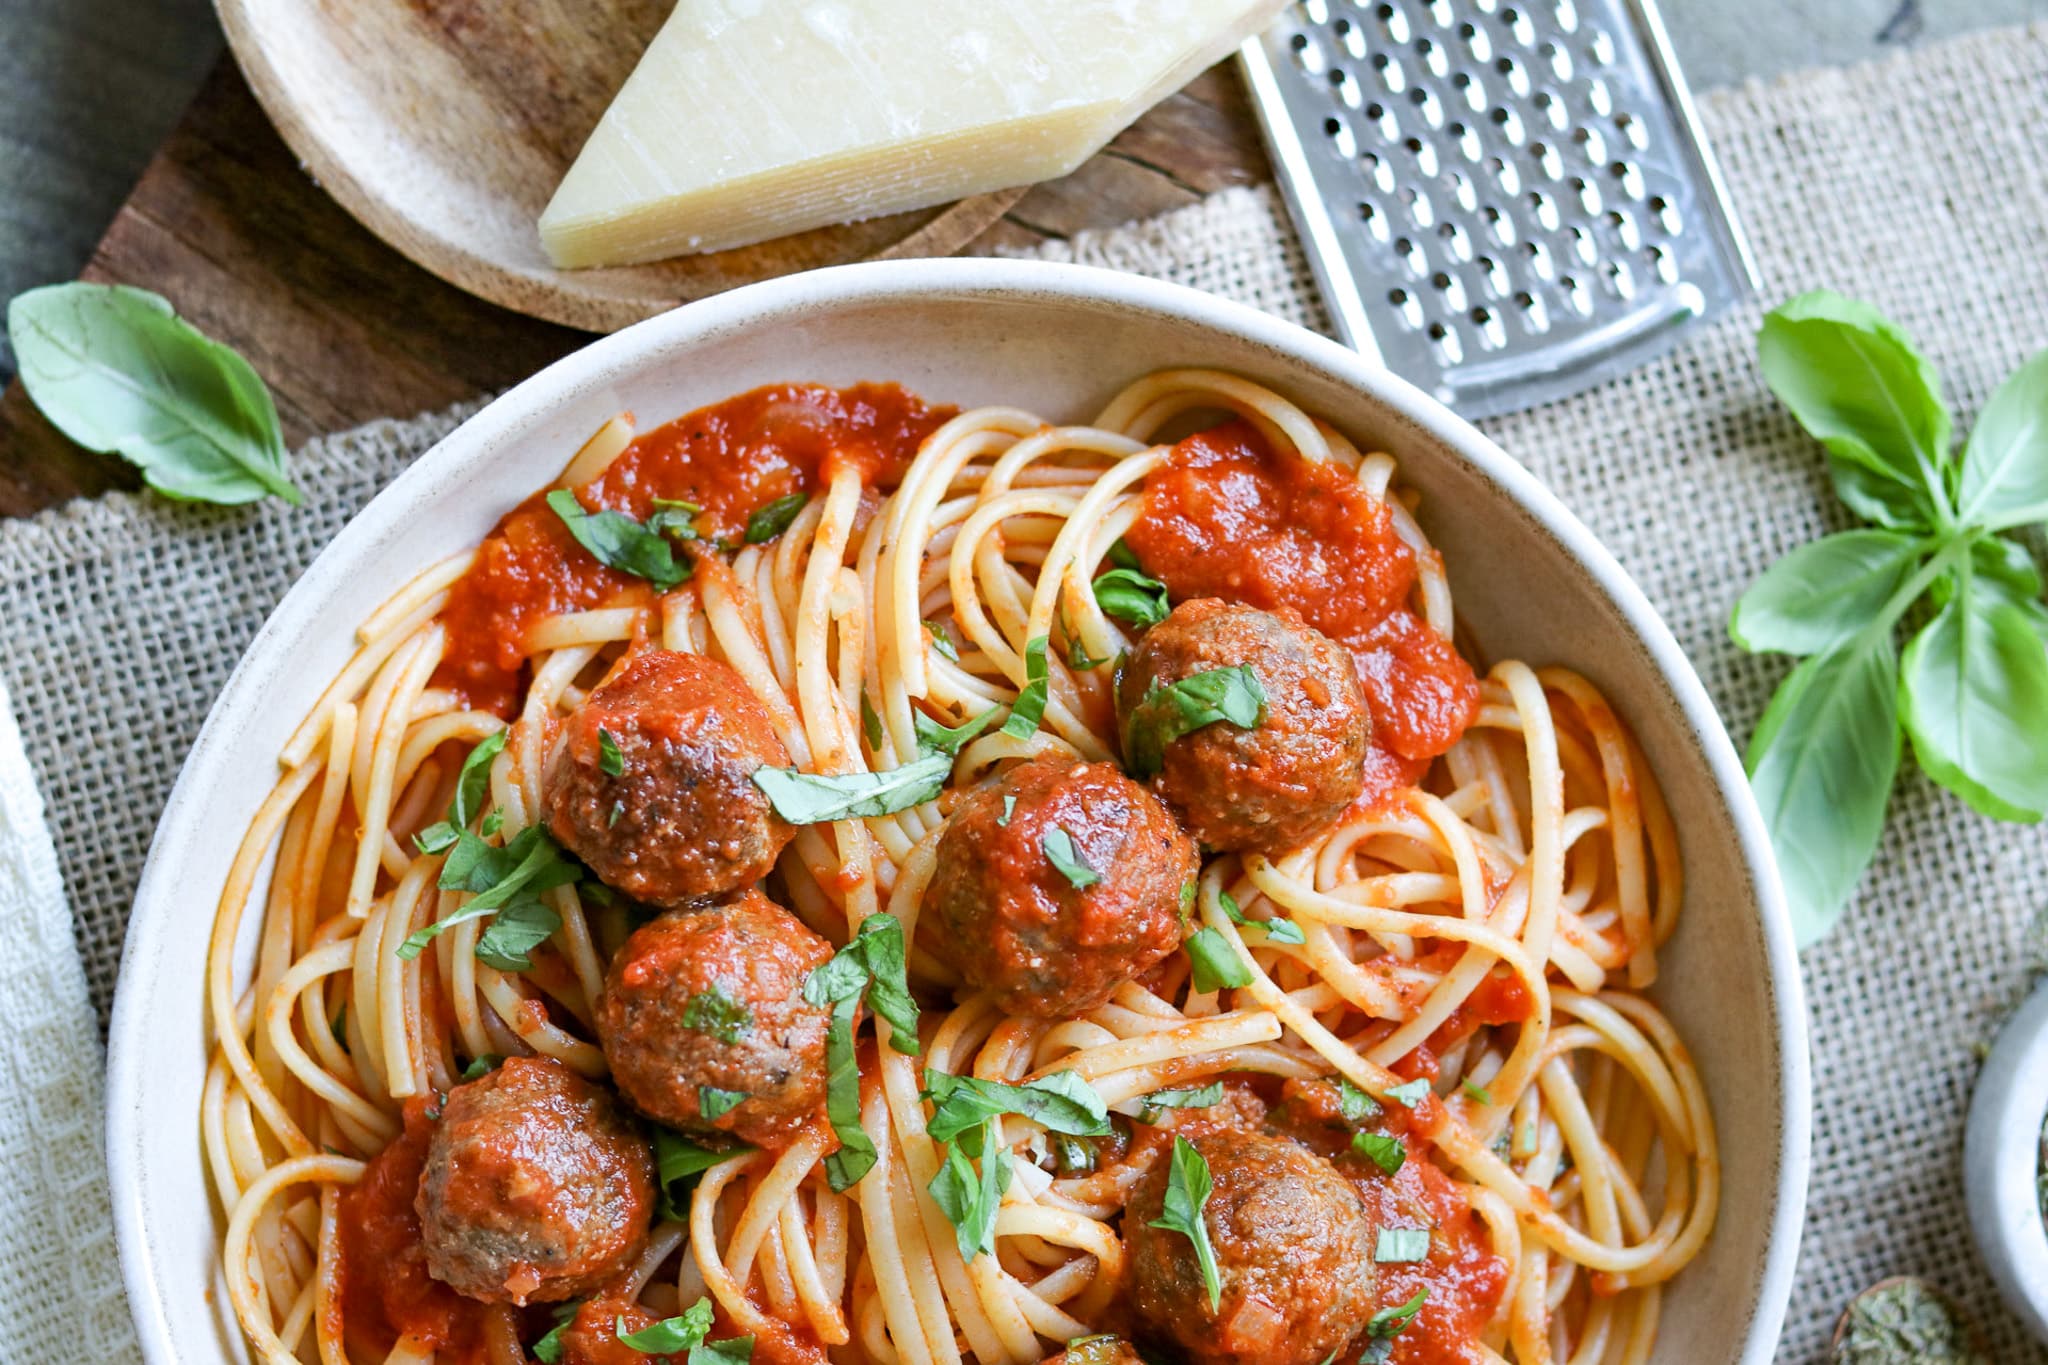 Spaghetti mit Fleischbällchen, mit frischem Basilikum auf einem hellen Teller mit Parmesan und Reibe